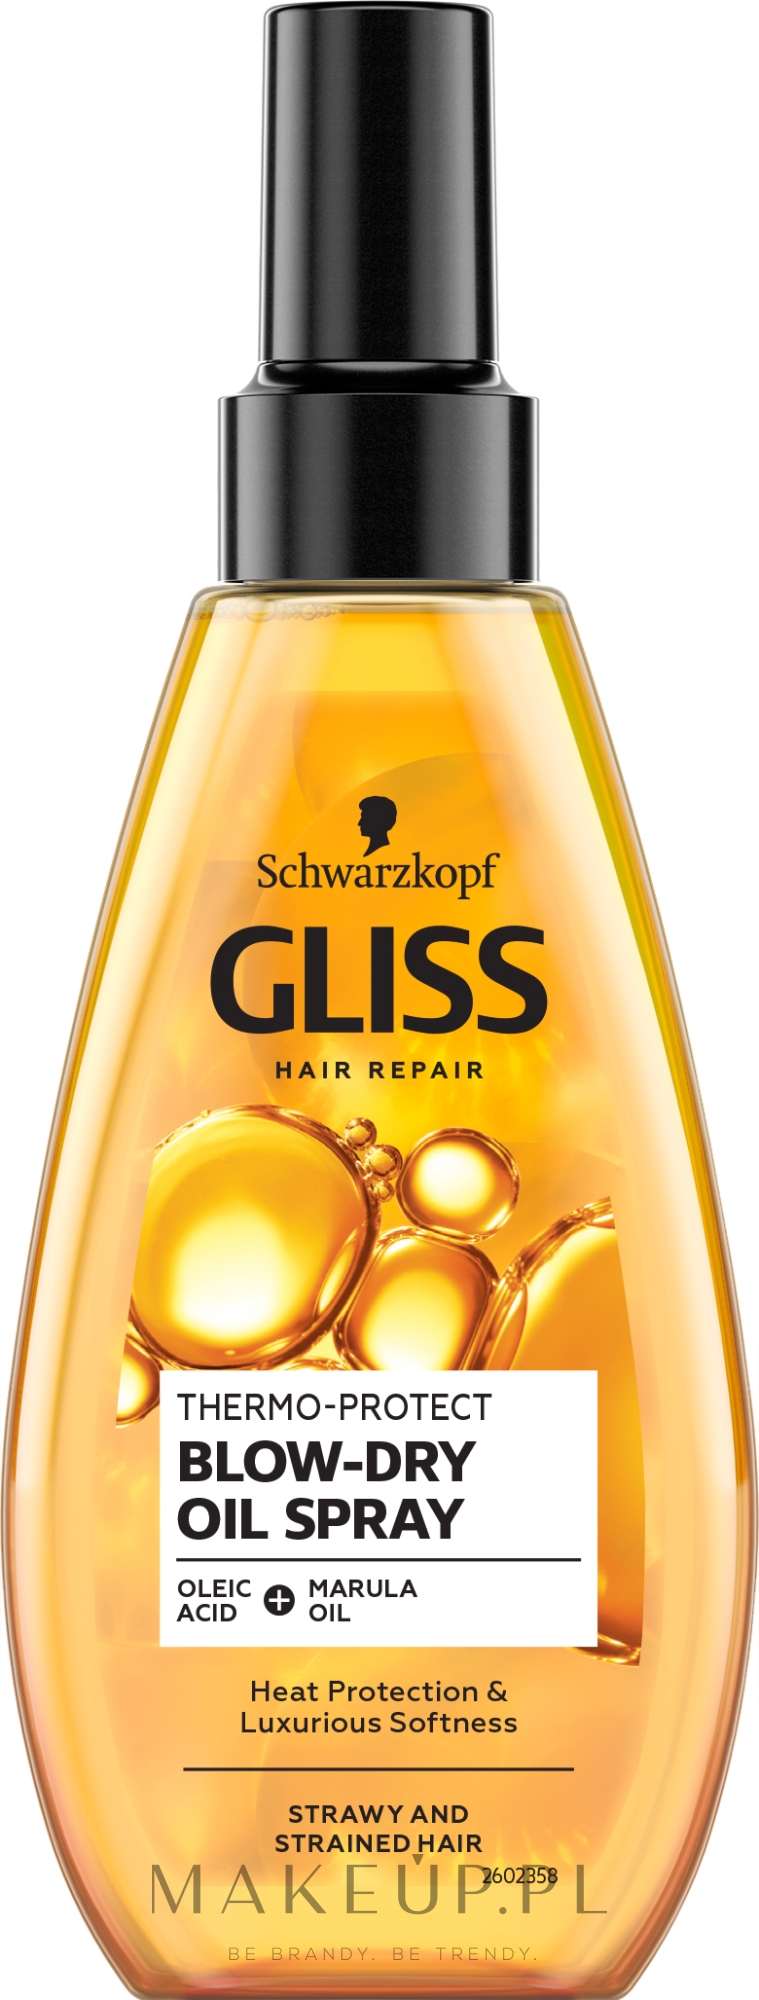 gliss kur thermo-protect olejek do włosów